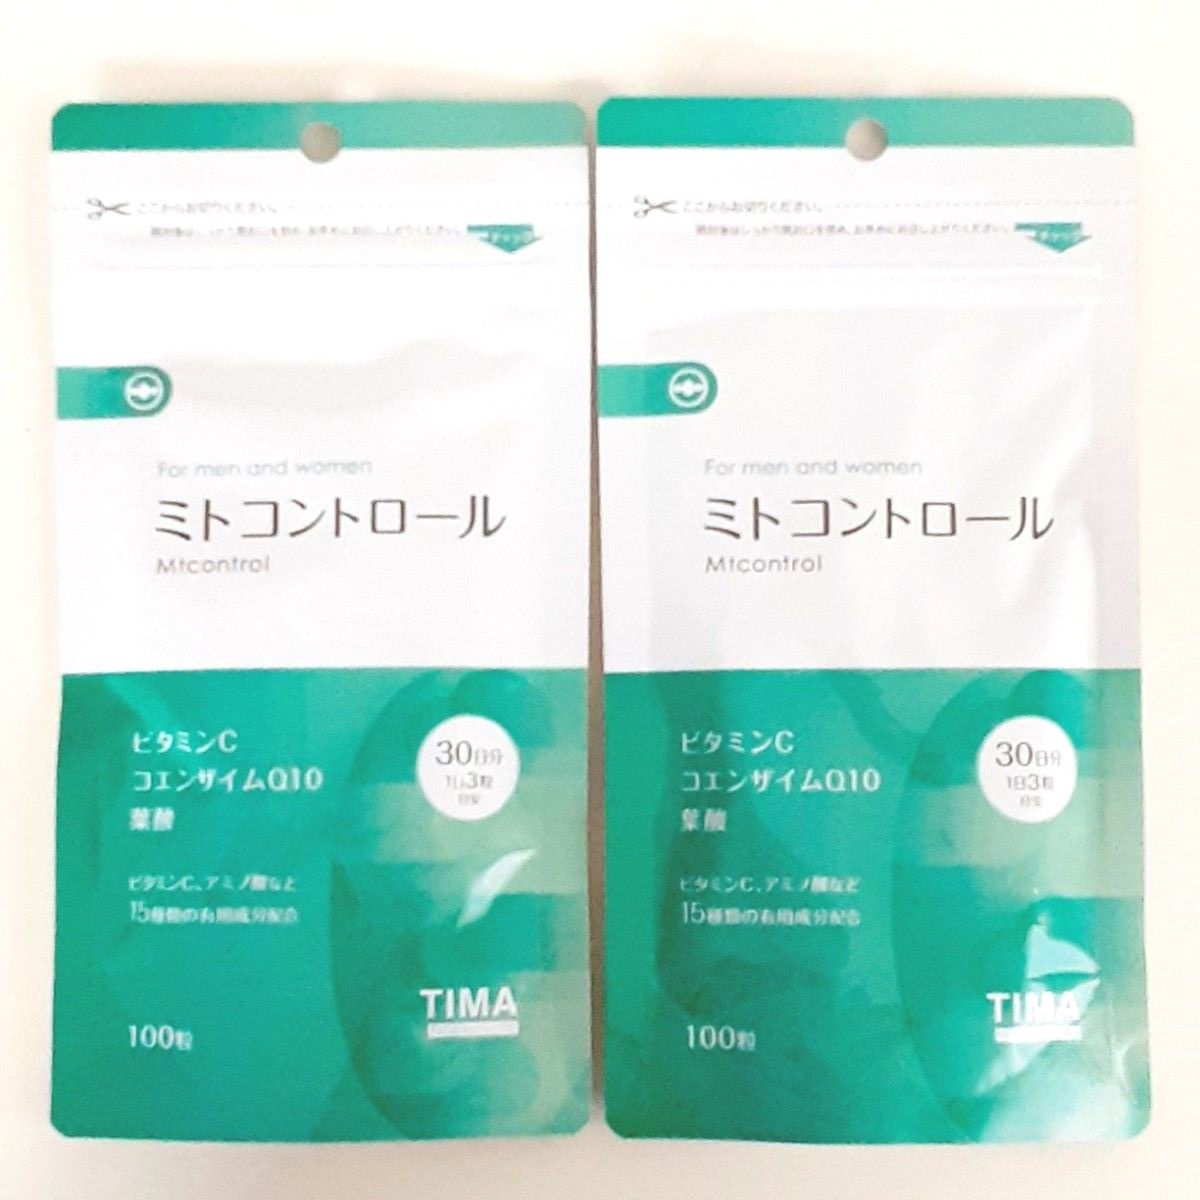 【新品・未開封】TIMA Tokyo ミトコントロール 100粒入り×2袋 ビタミンC、コエンザイムQ10、葉酸